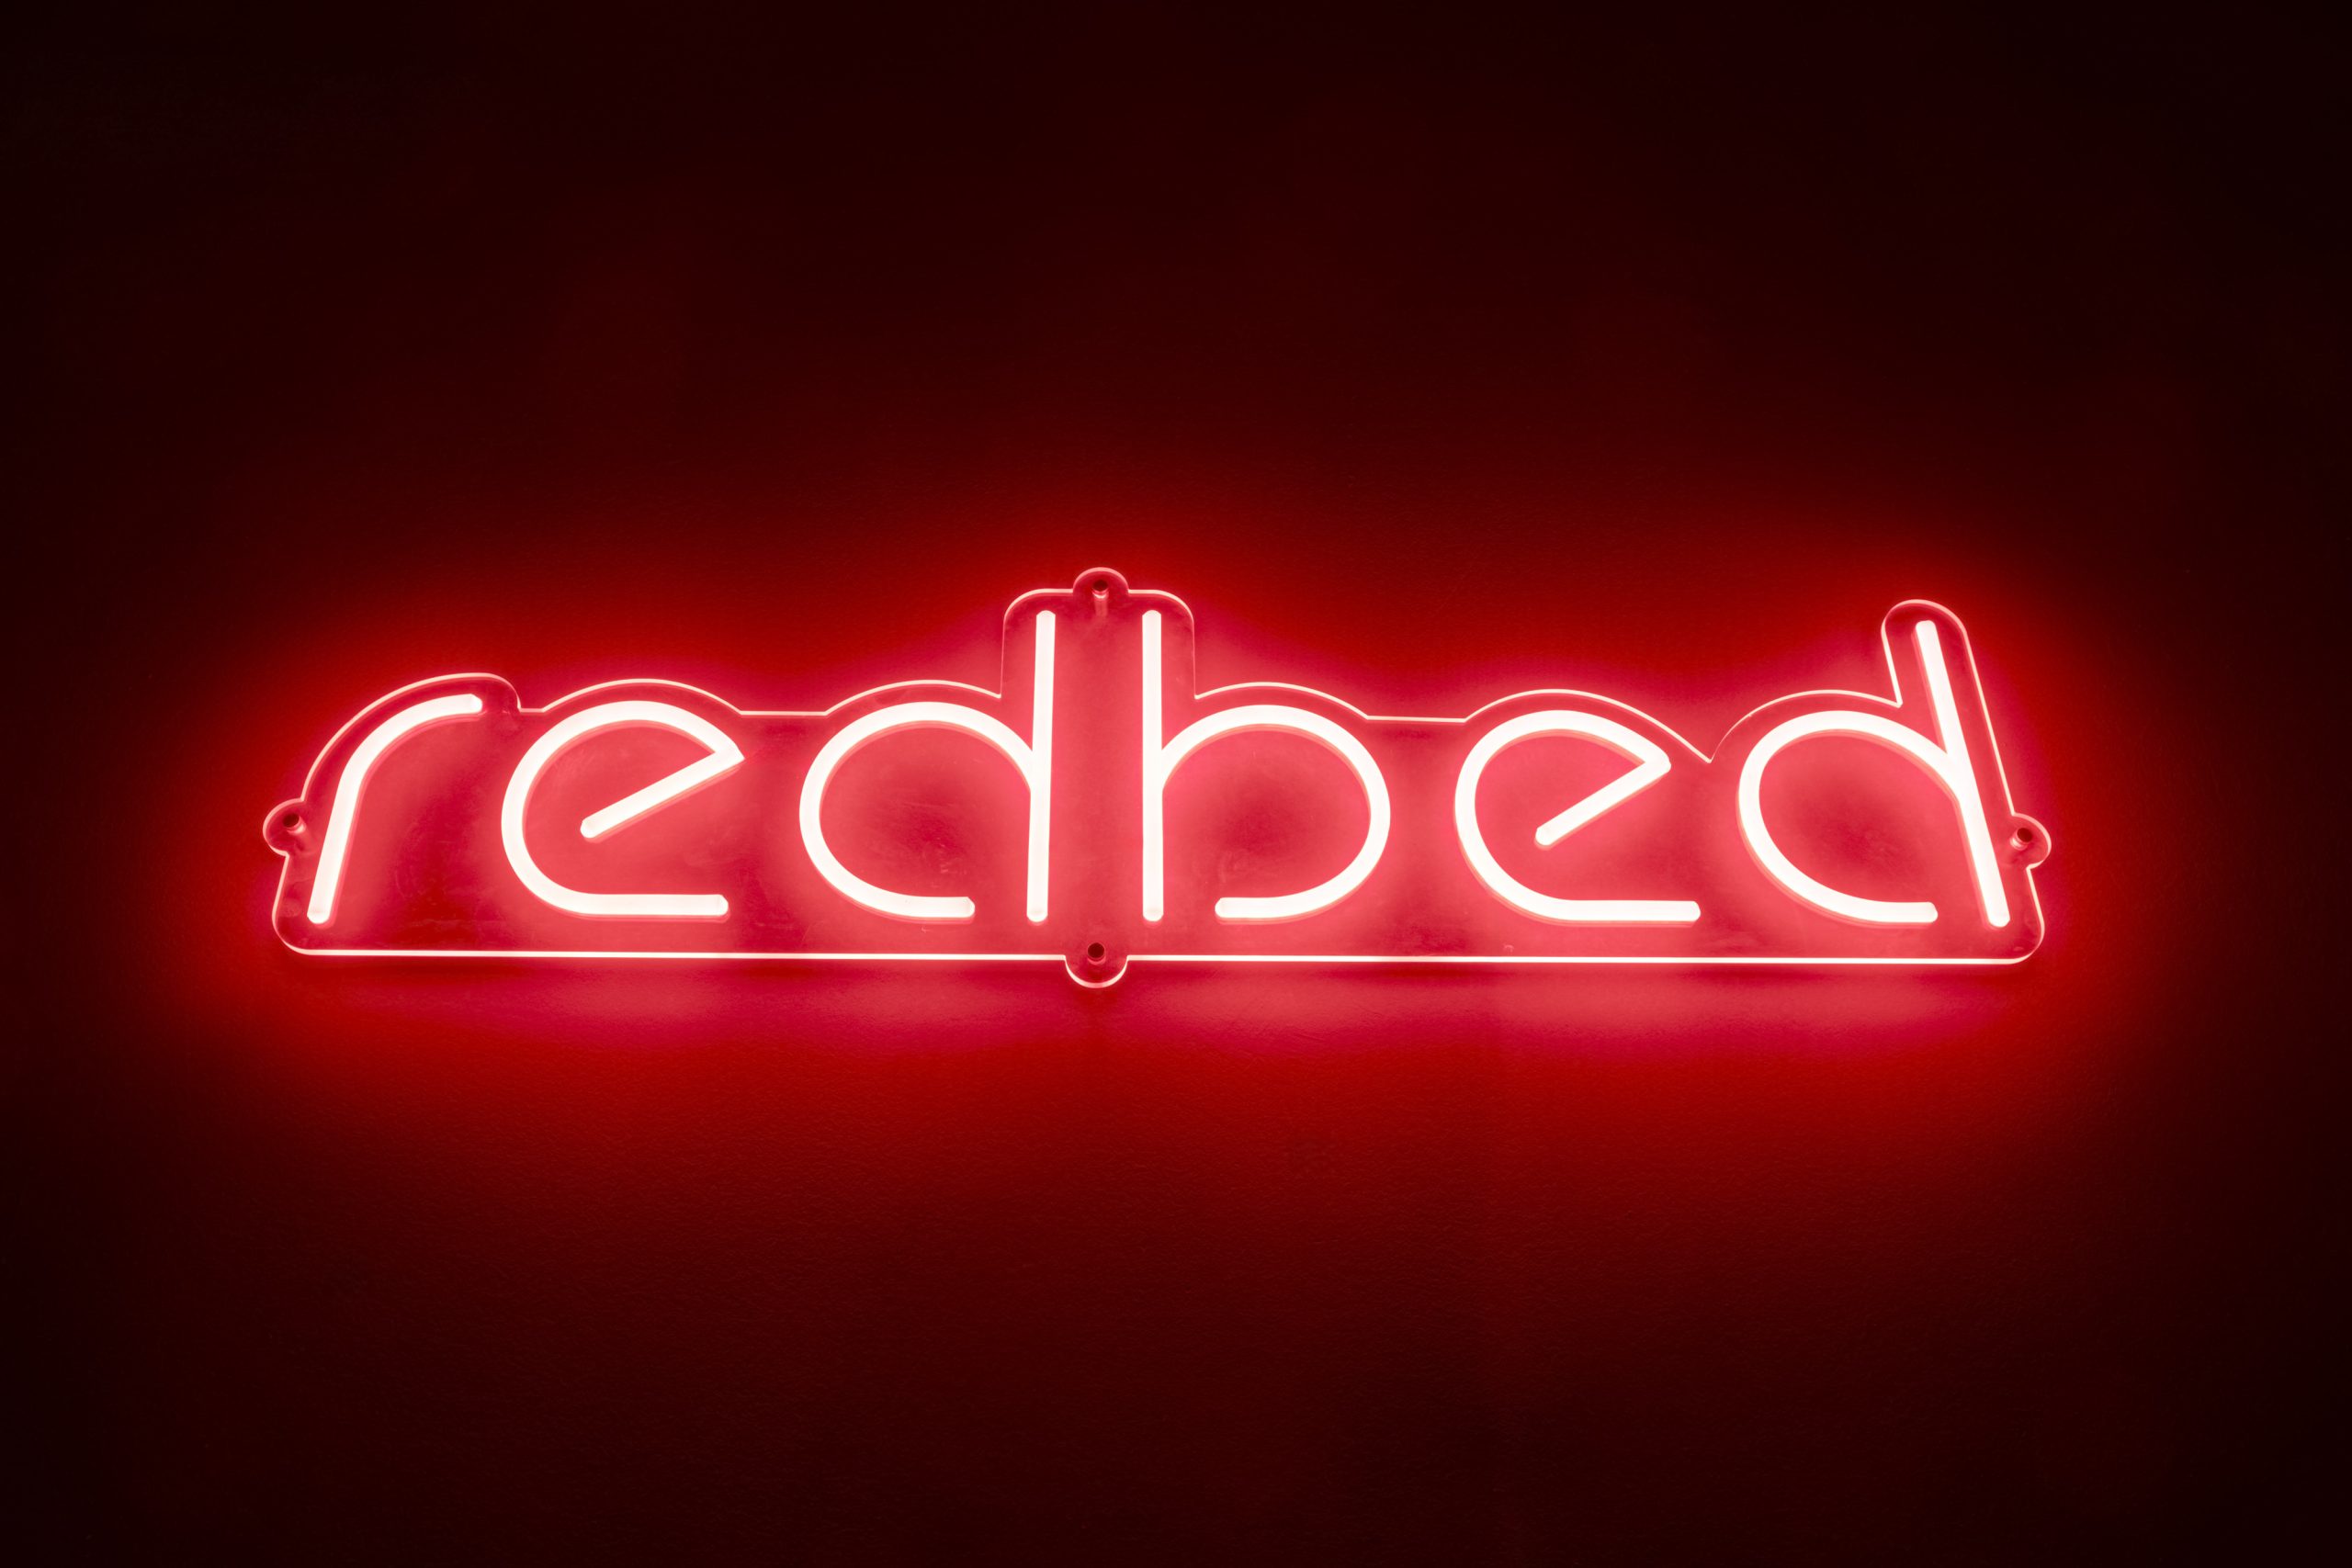 RedBed